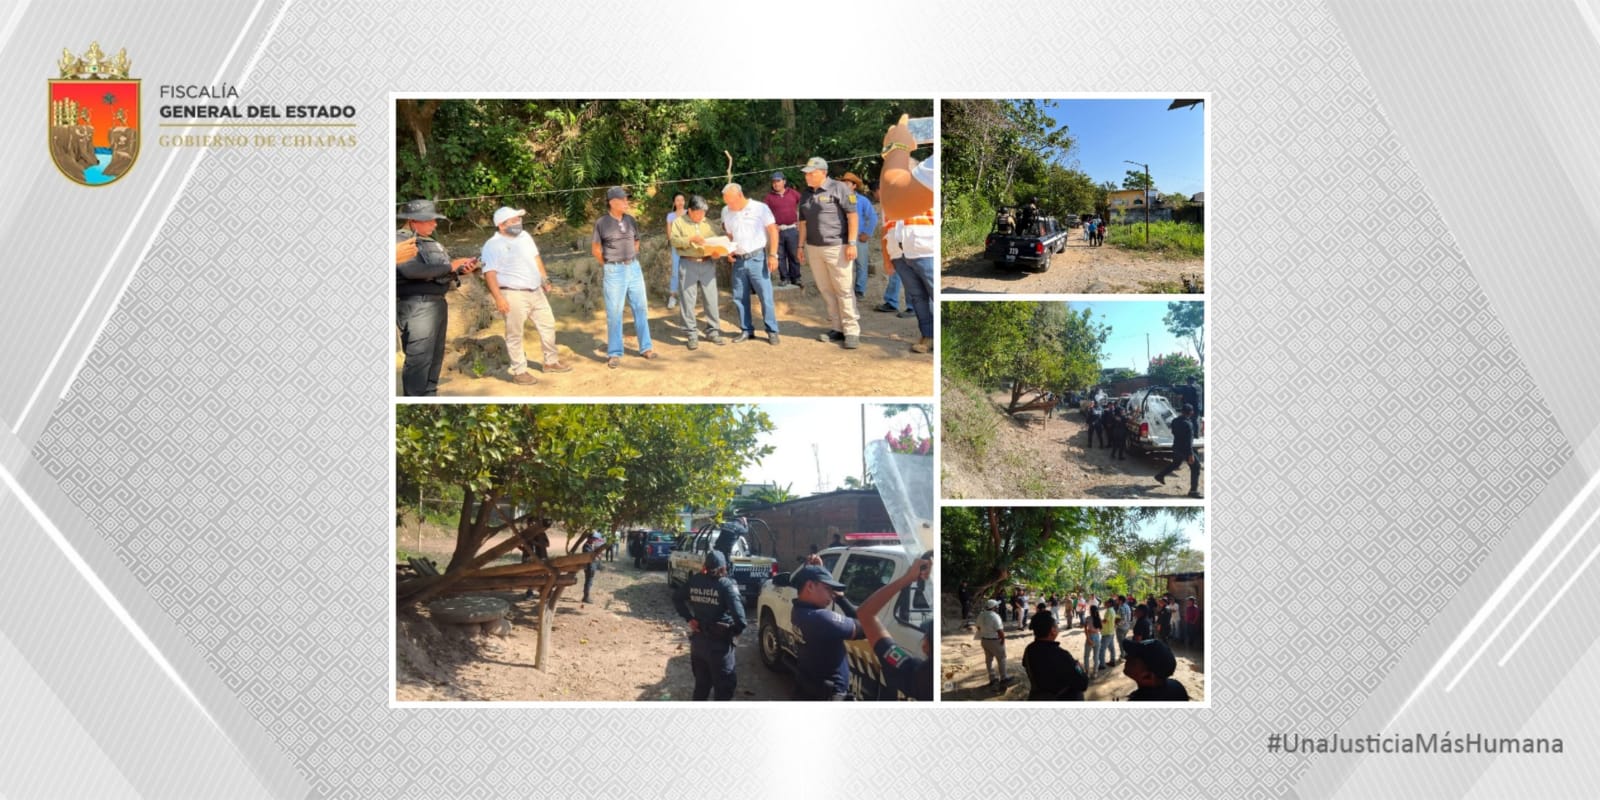 Fiscalía de Chiapas restituye predio ocupado de forma irregular en el municipio de Tapachula